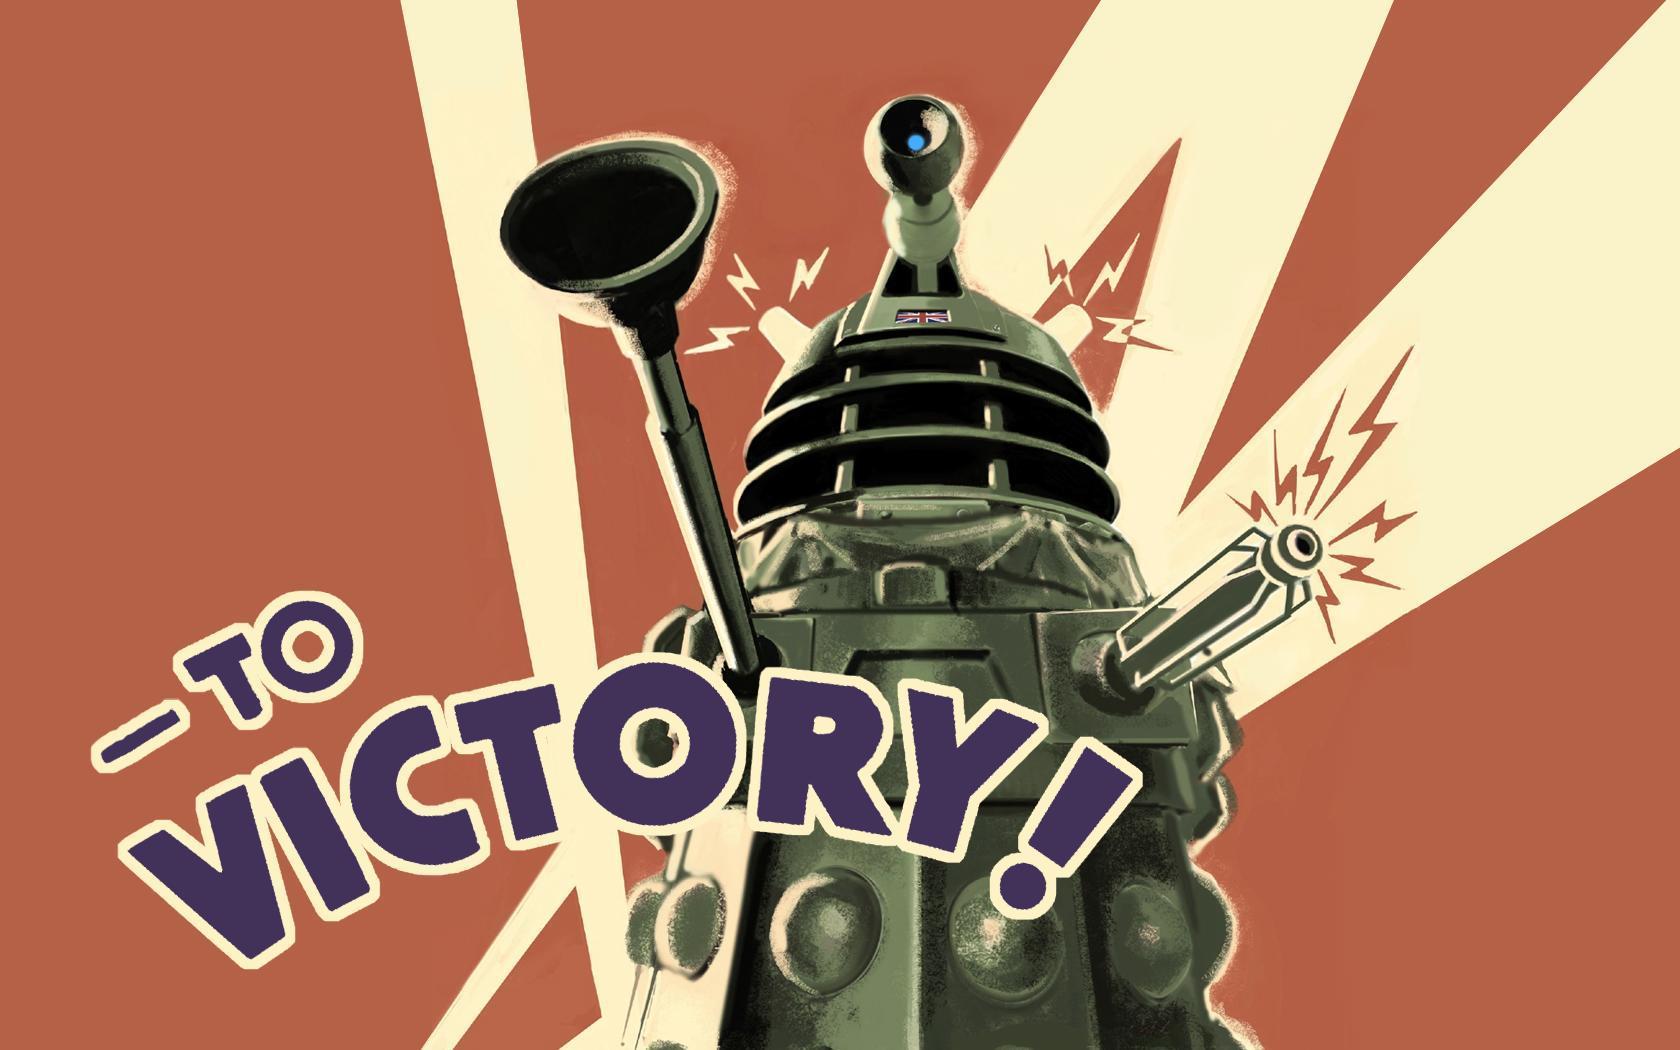 Wallpaper For > Doctor Who Dalek Wallpaper